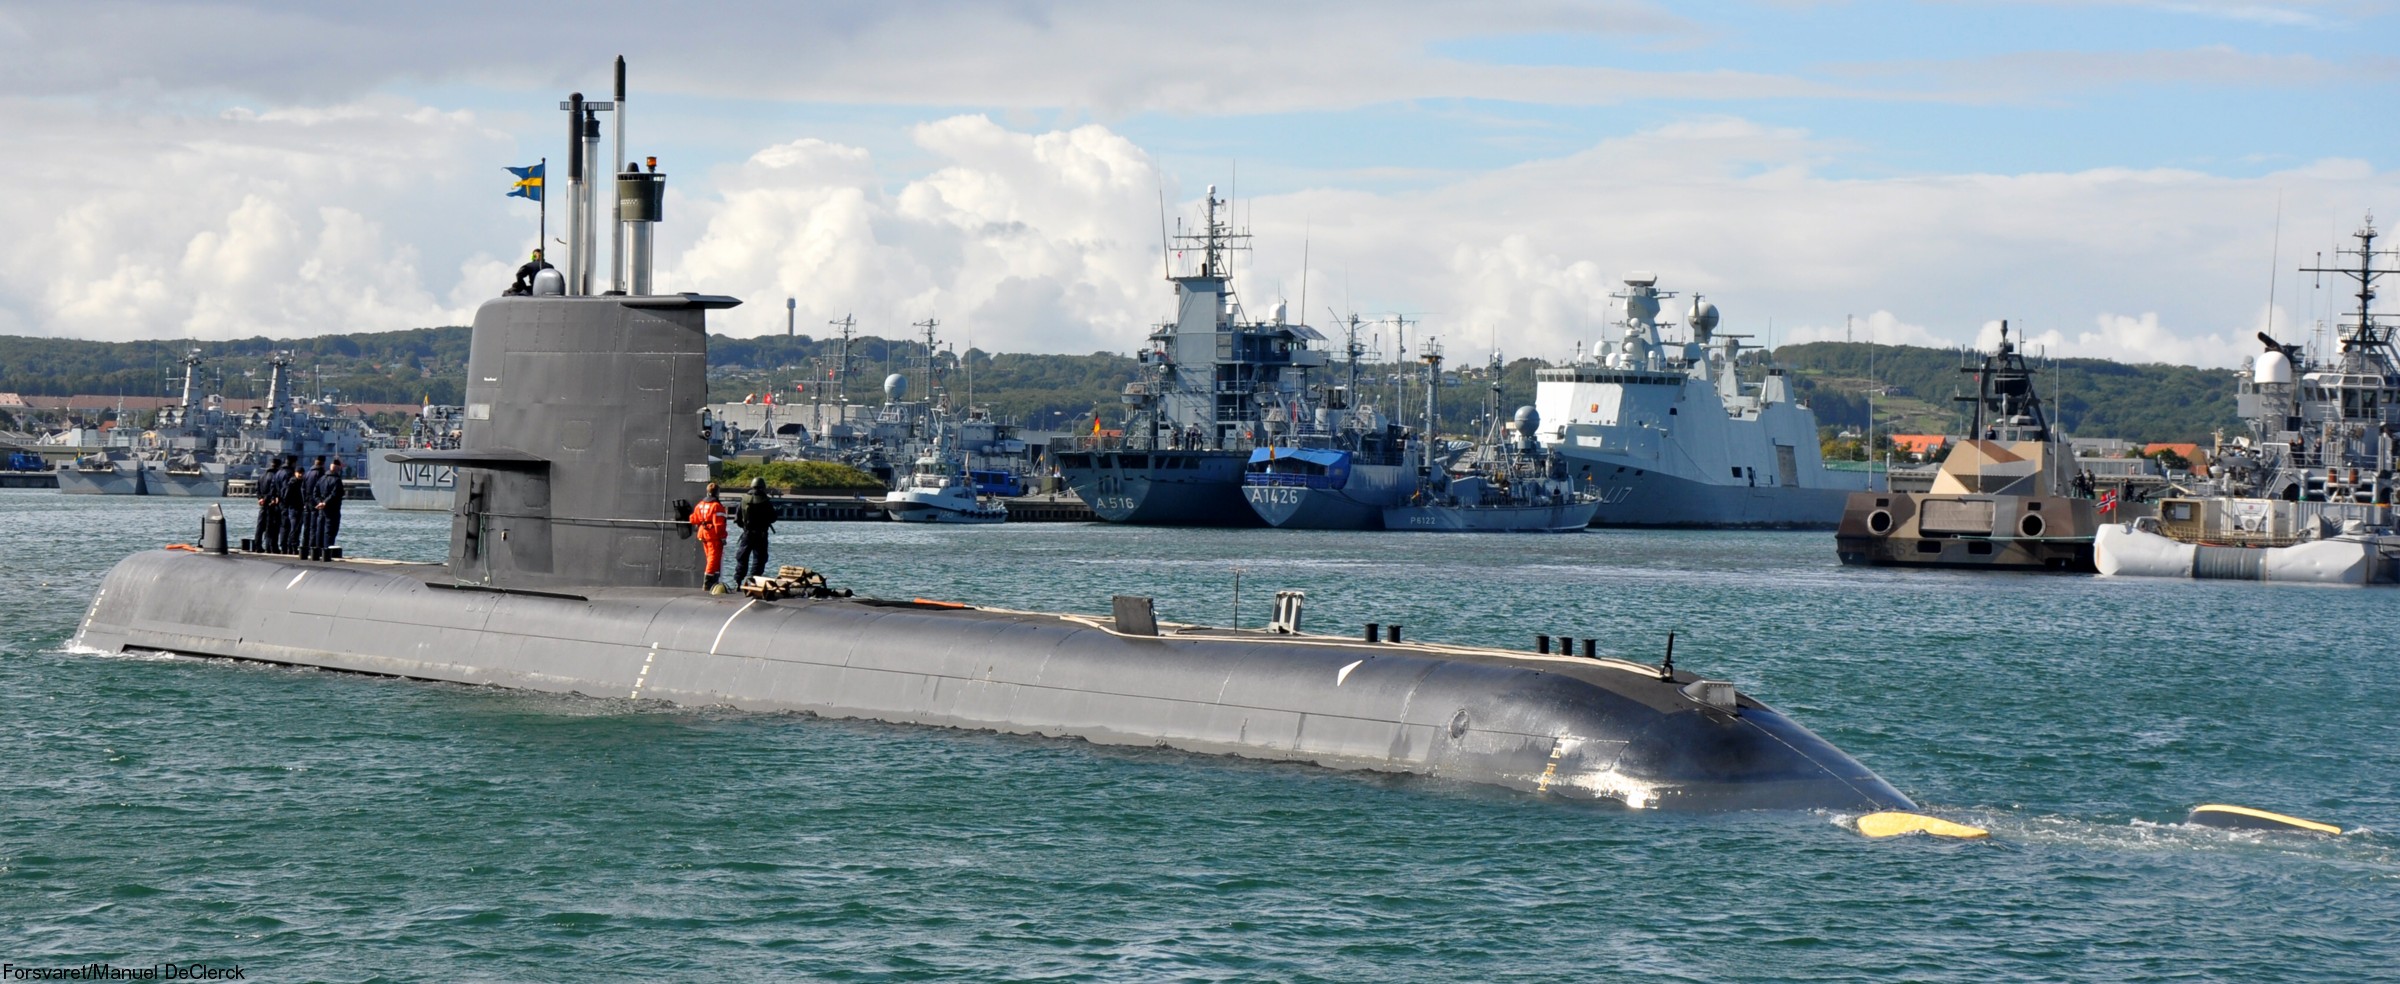 hswms hms gotland gtd class submarine ssk swedish navy svenska marinen försvarsmakten kockums 29